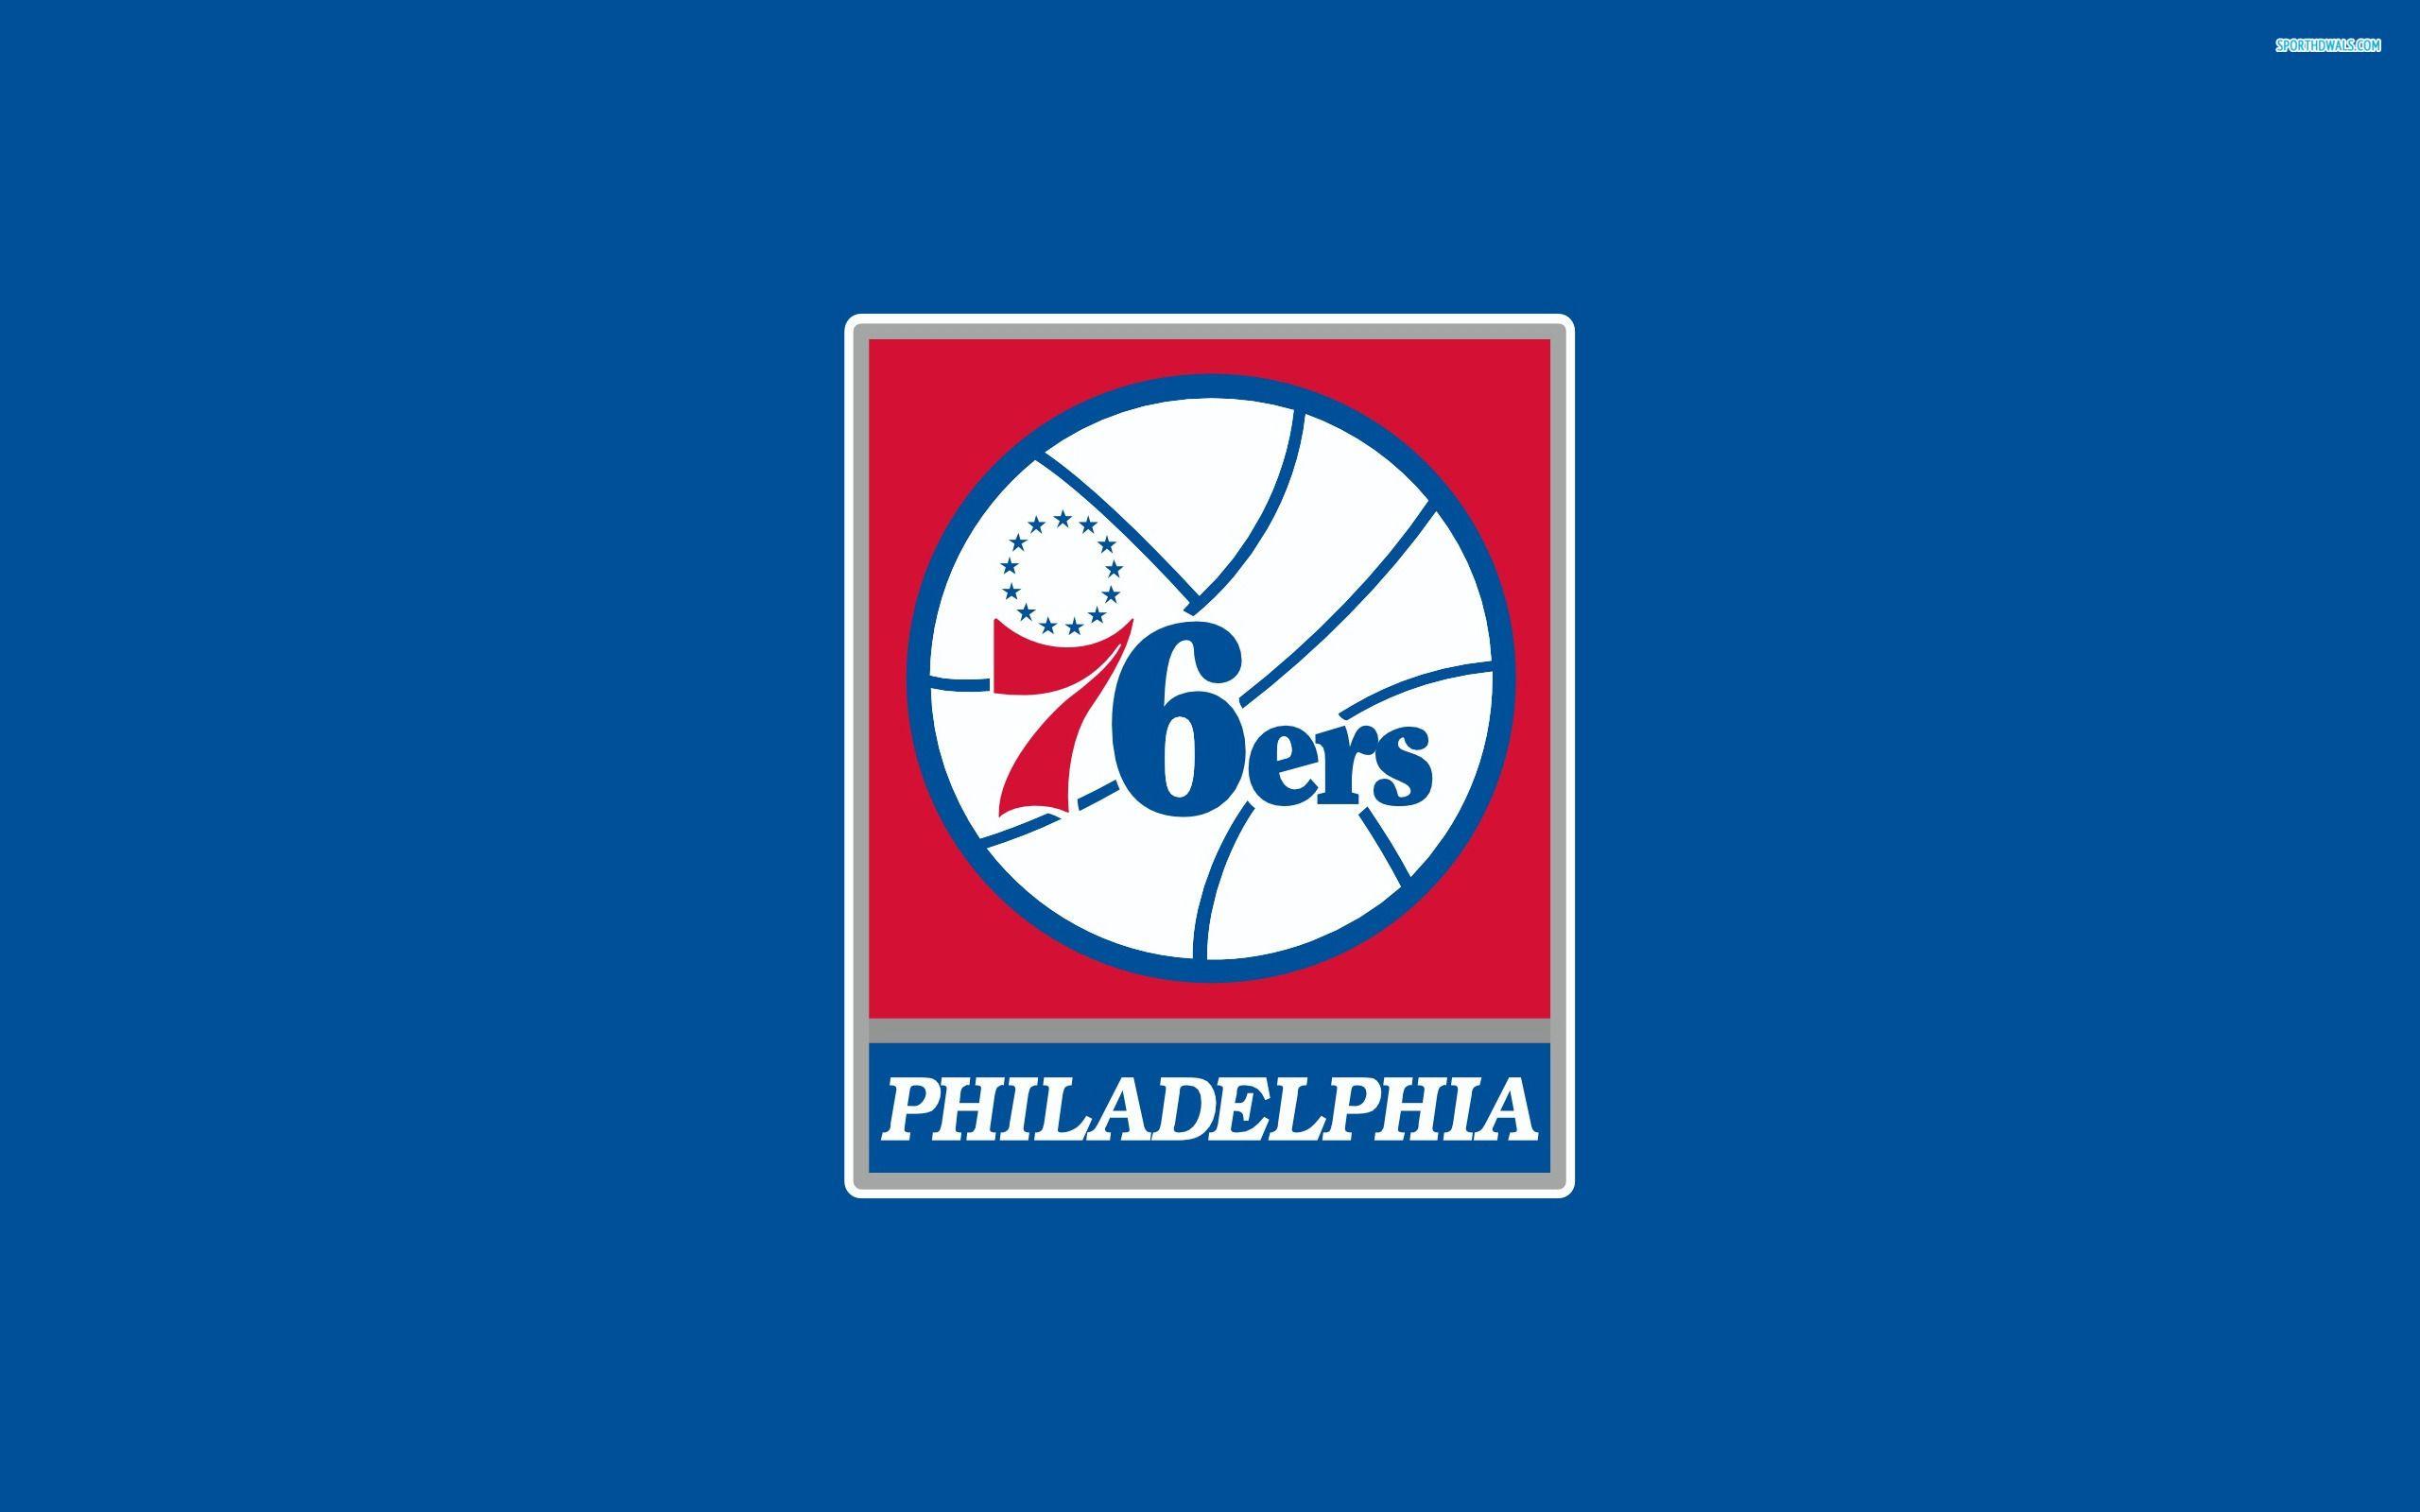 Outstanding Philadelphia 76ers wallpaper. Philadelphia 76ers